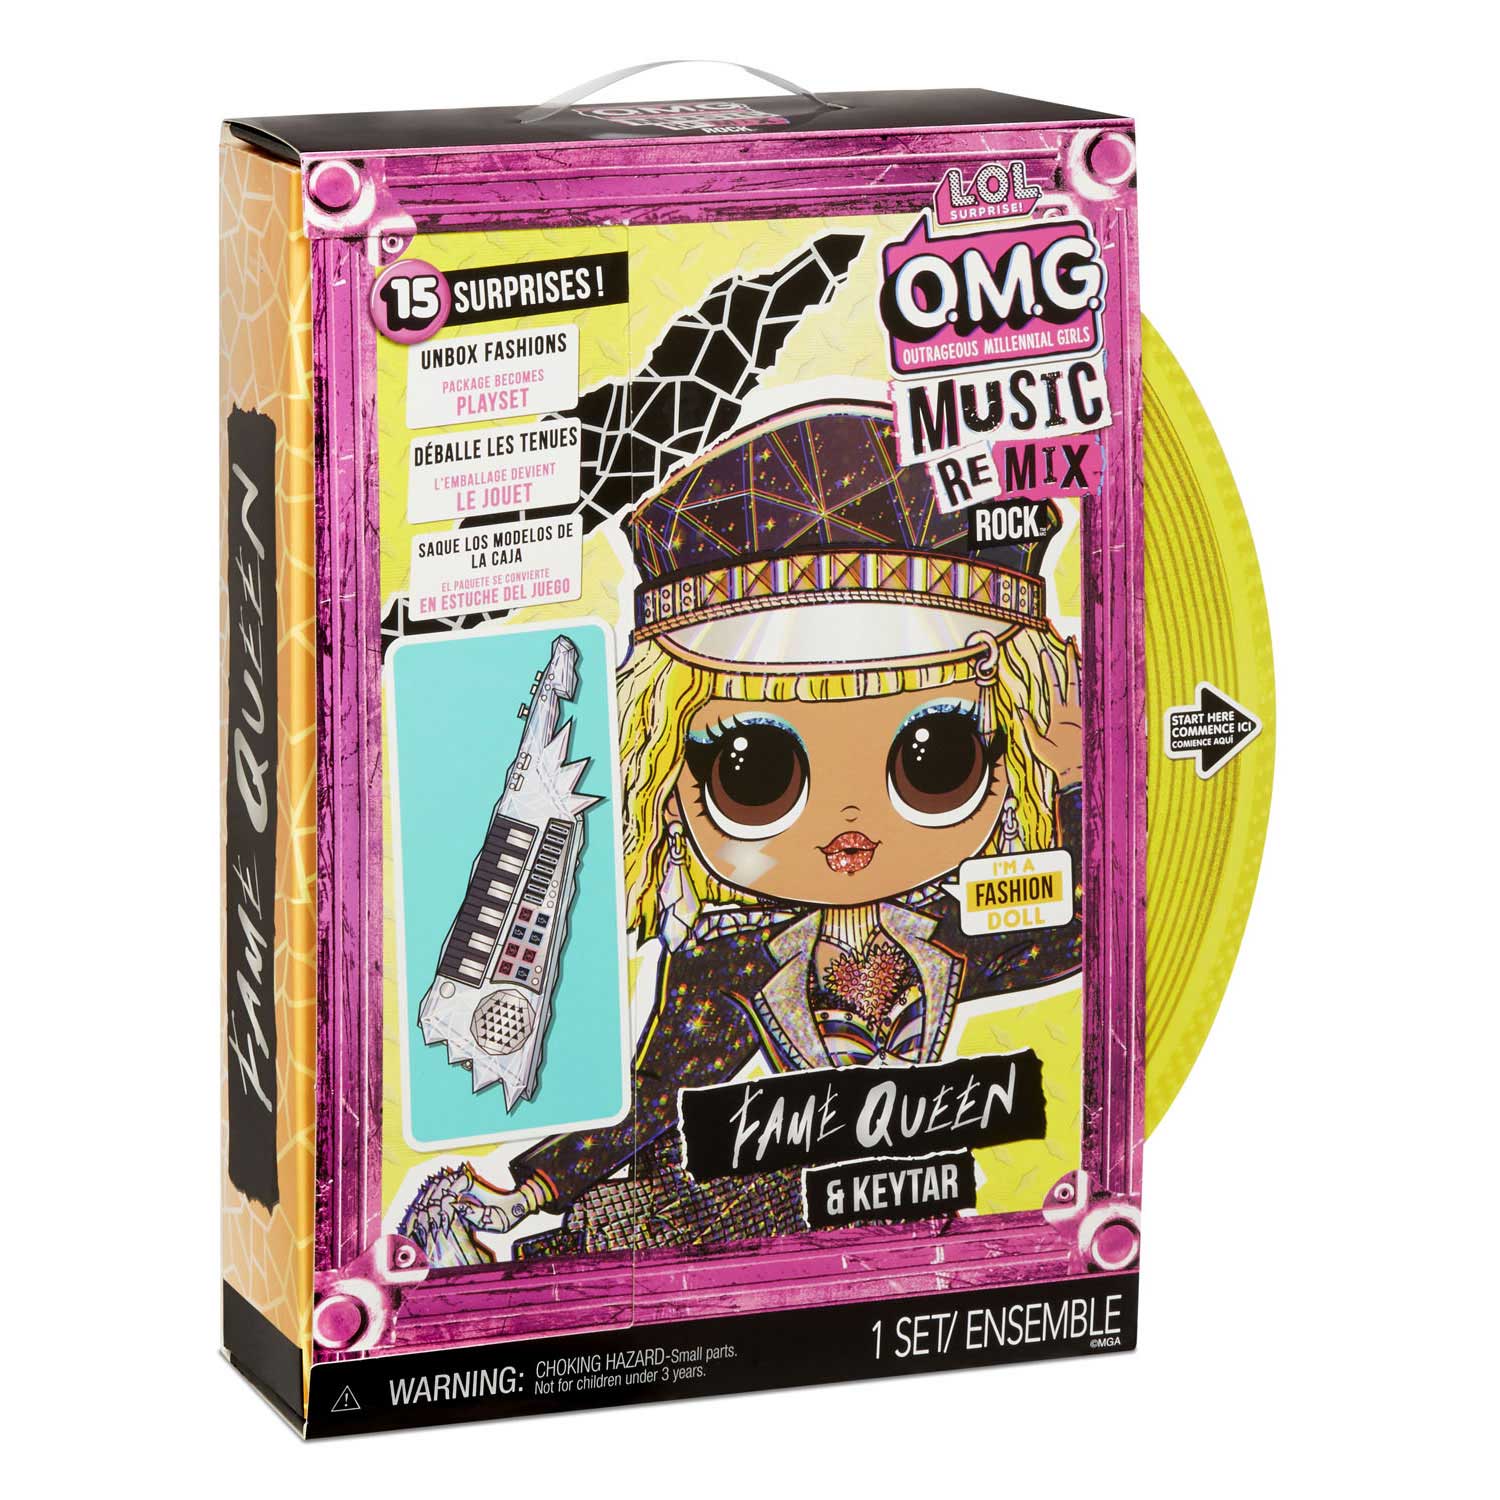 MDR. Surprise OMG Pop Remix Rock-Fame Queen et Keytar